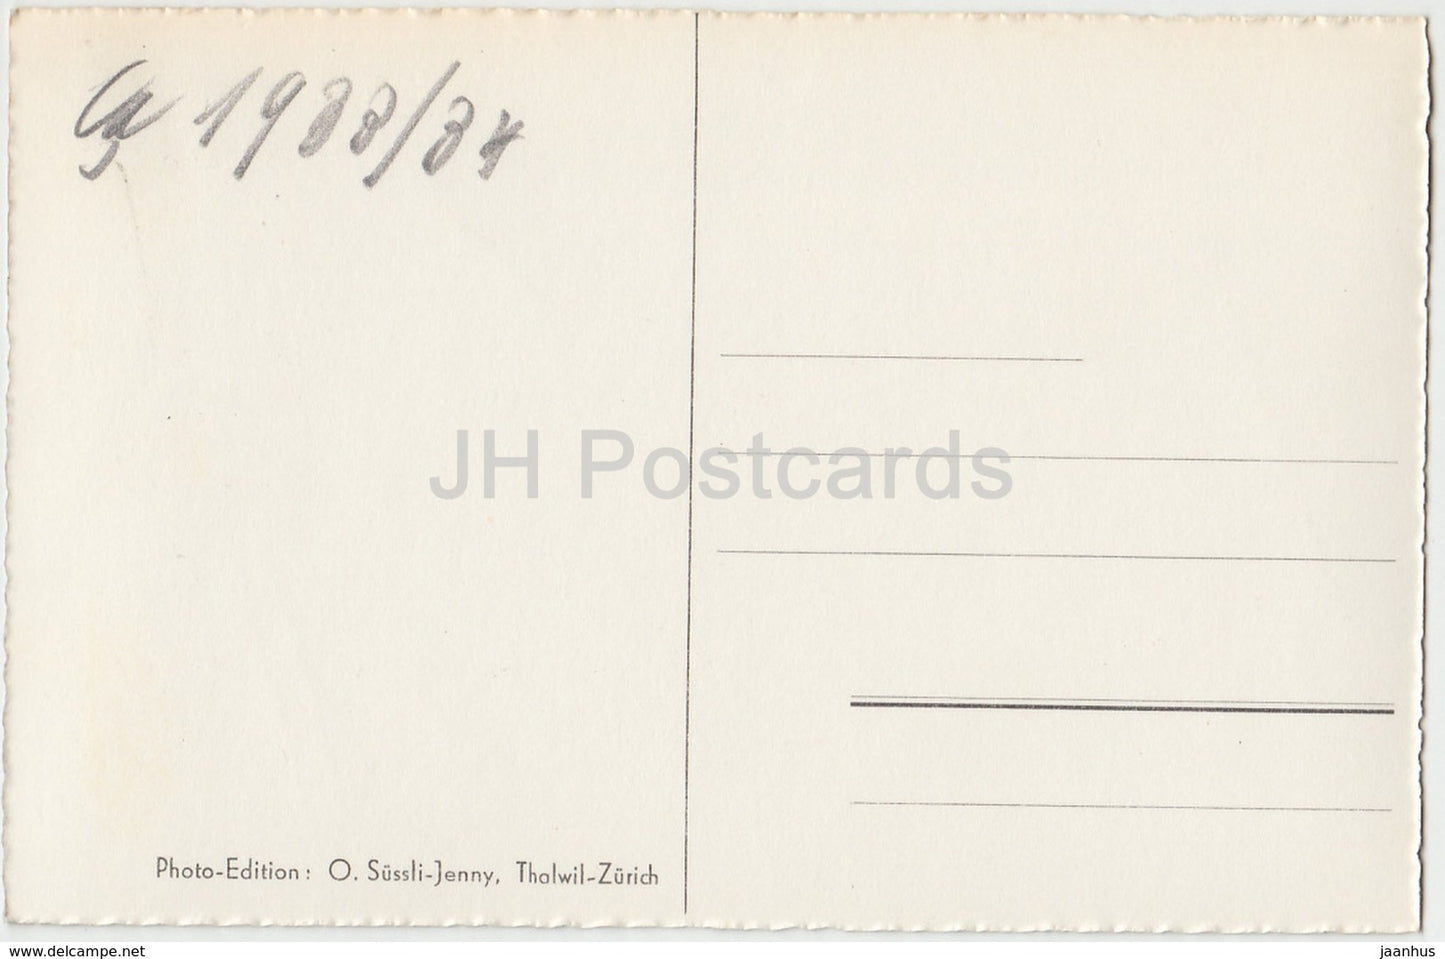 Rhonegletscher von der Furkabahn aus - 1961 - Switzerland - old postcard - used